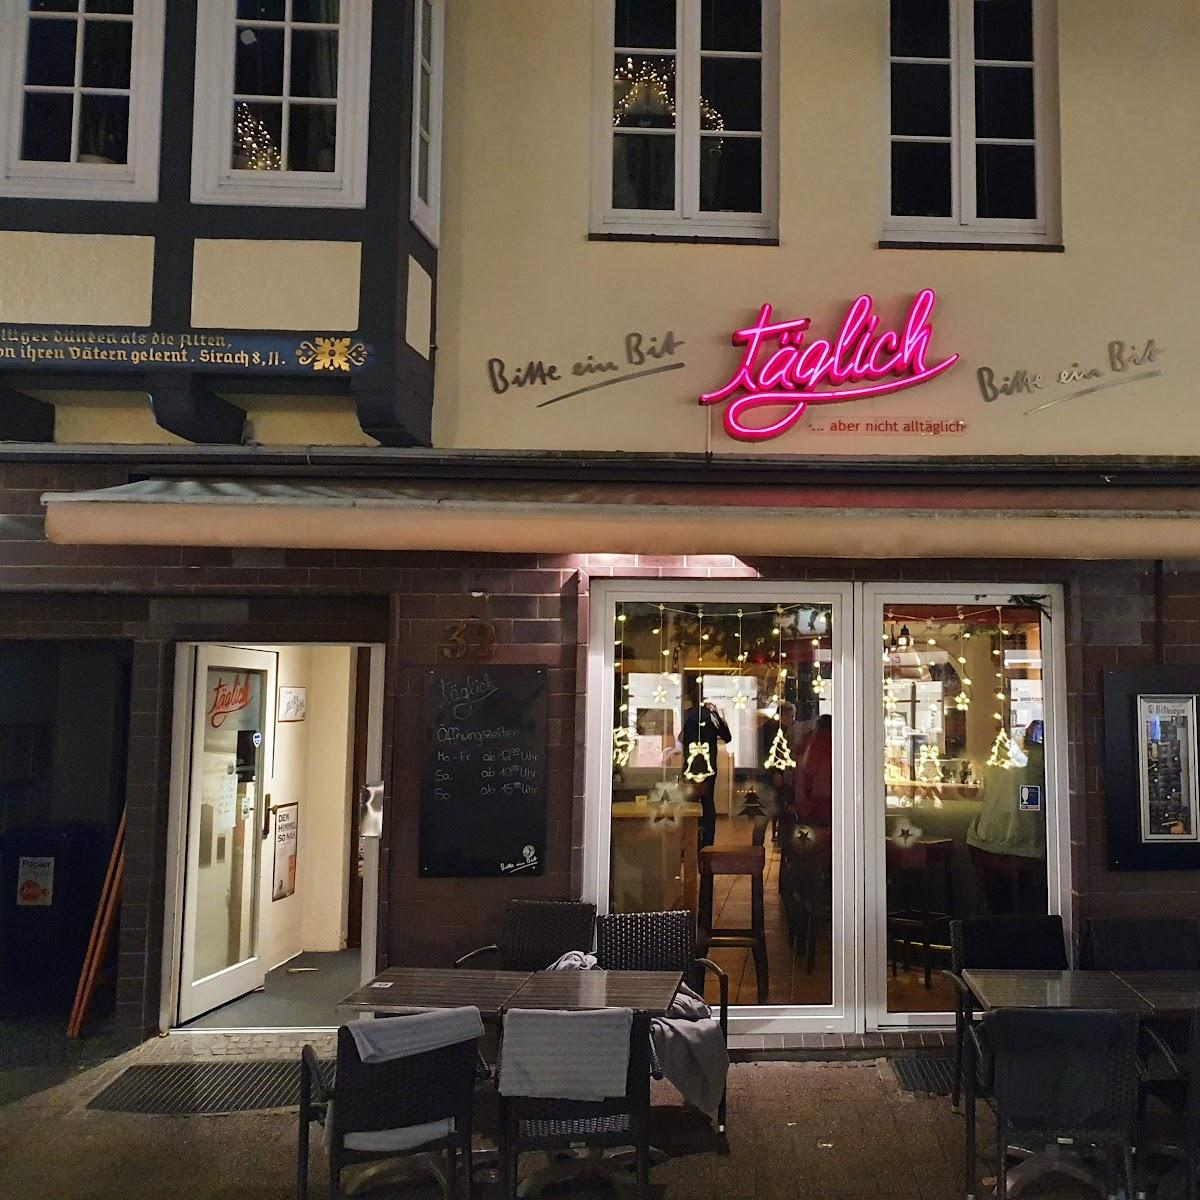 Restaurant "Täglich" in Celle